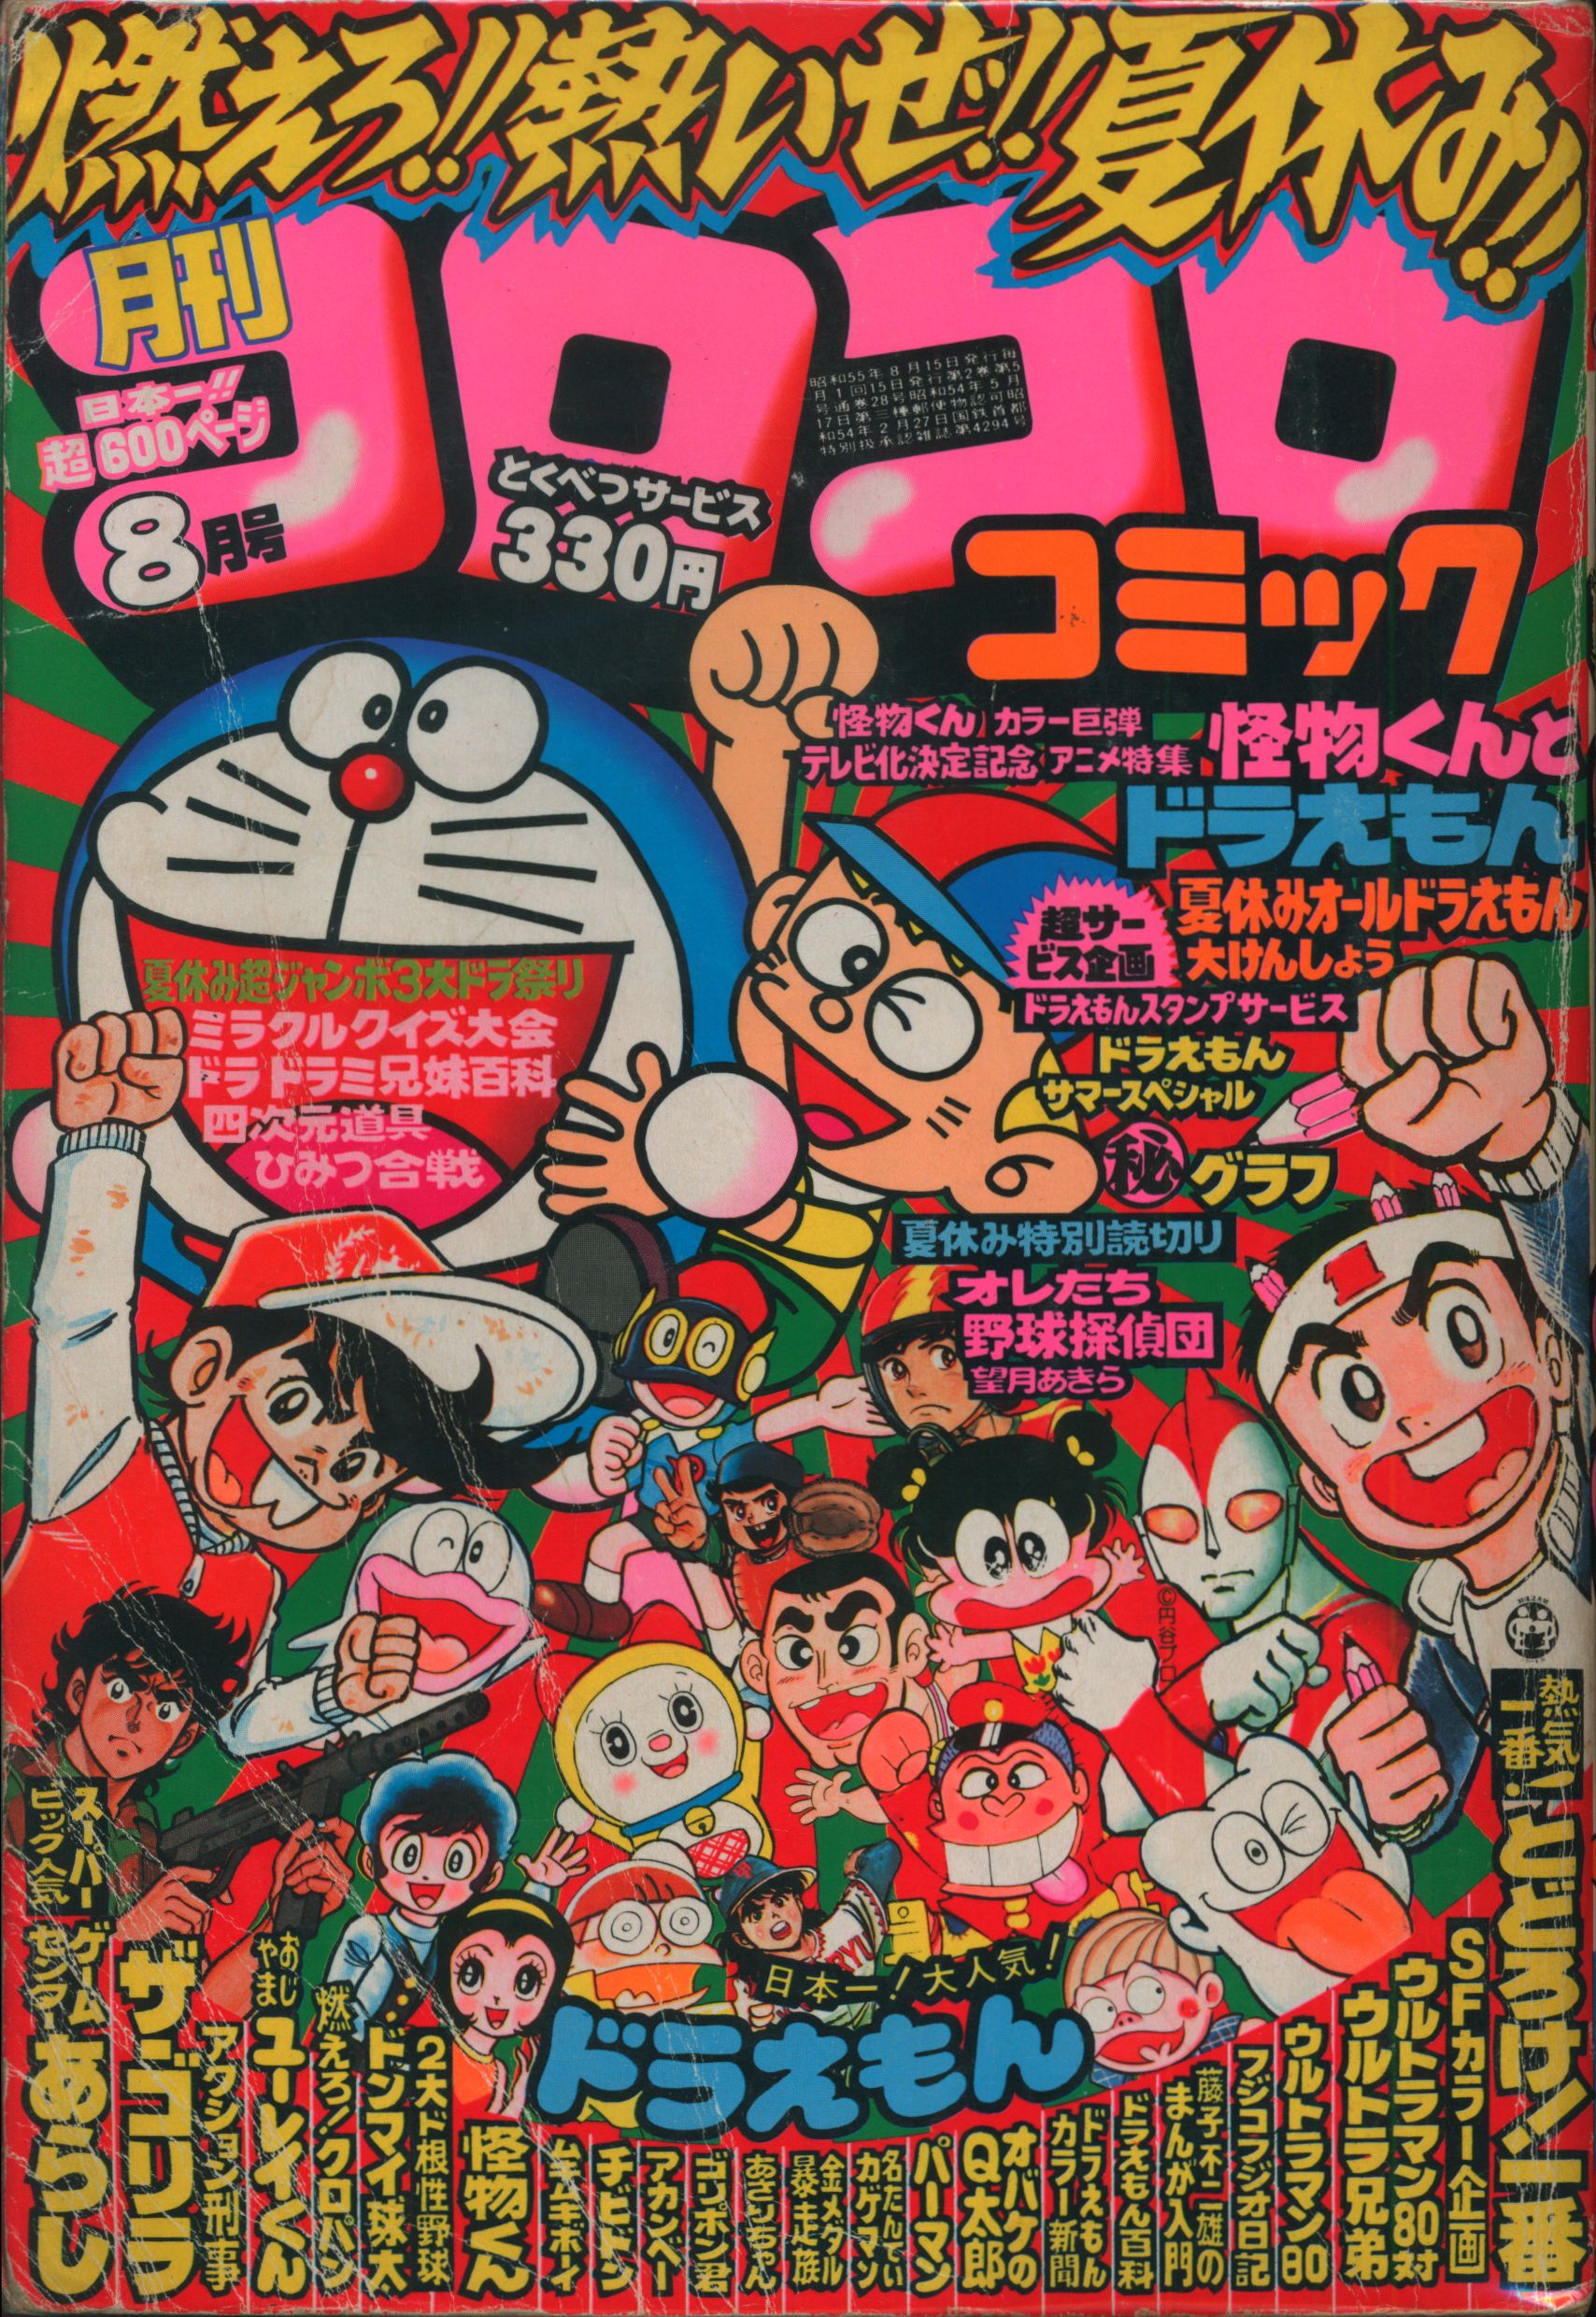 小学館 1980年(昭和55年)の漫画雑誌 コロコロコミック 1980年(昭和55年